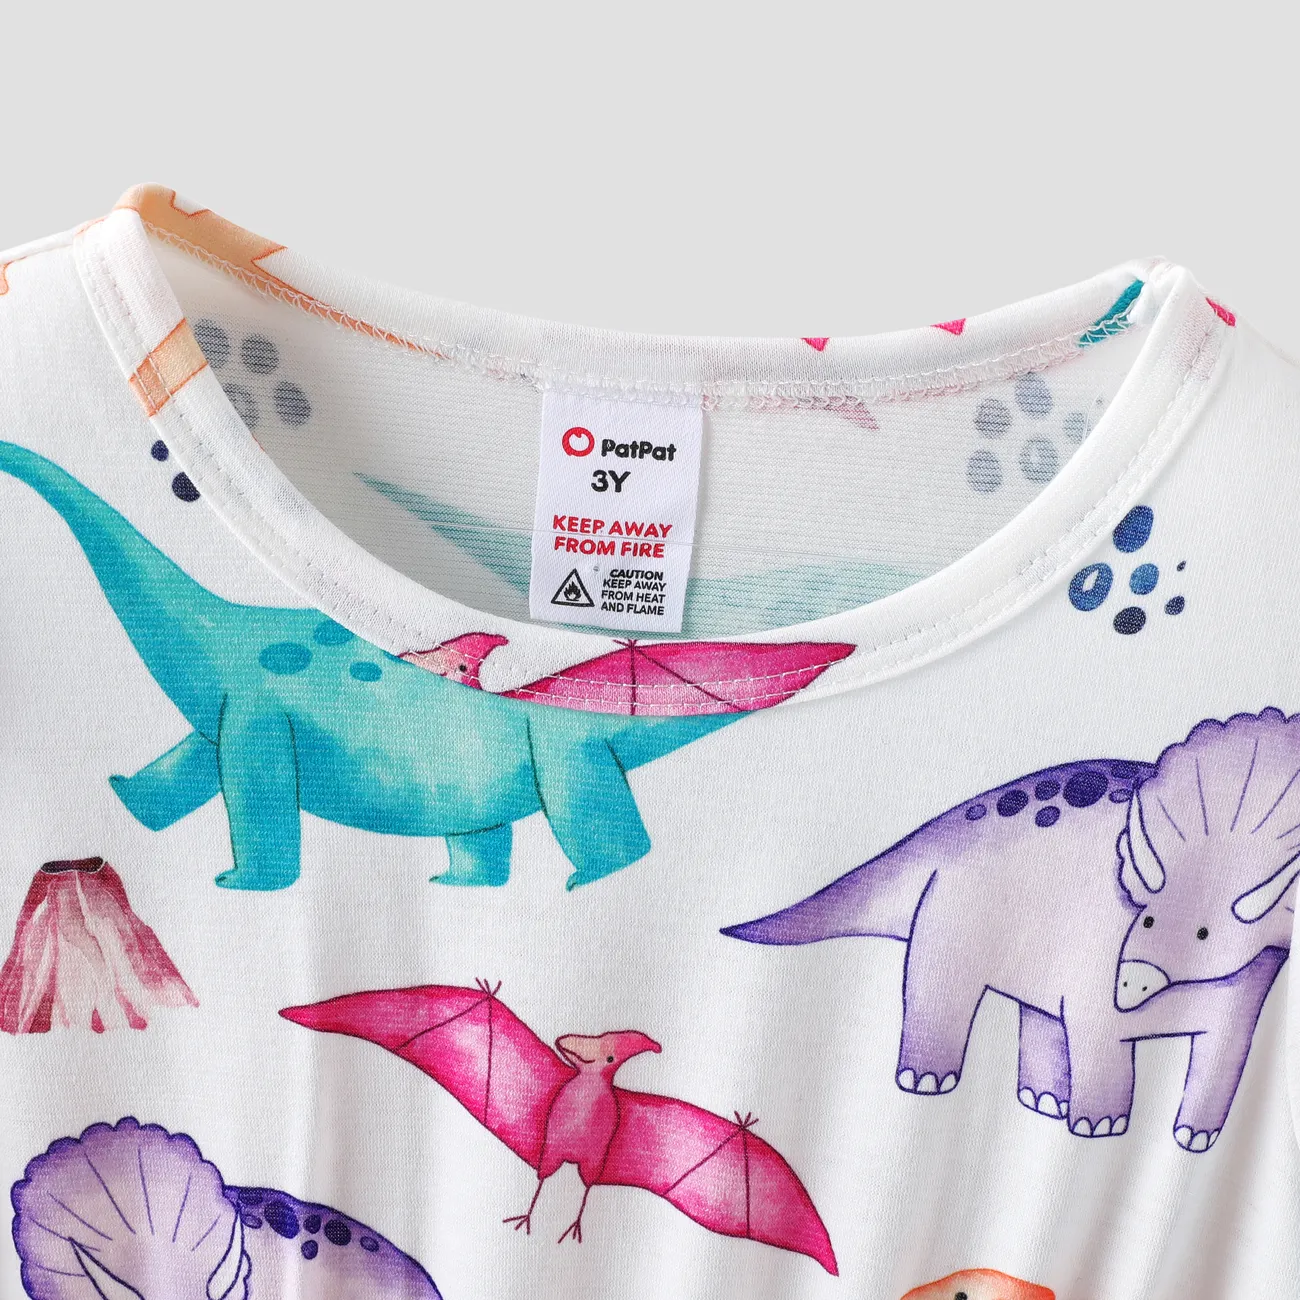 طفل صغير فتاة طفولي ديناصور طباعة بيجامة اللباس مع عقال متعدد الألوان big image 1